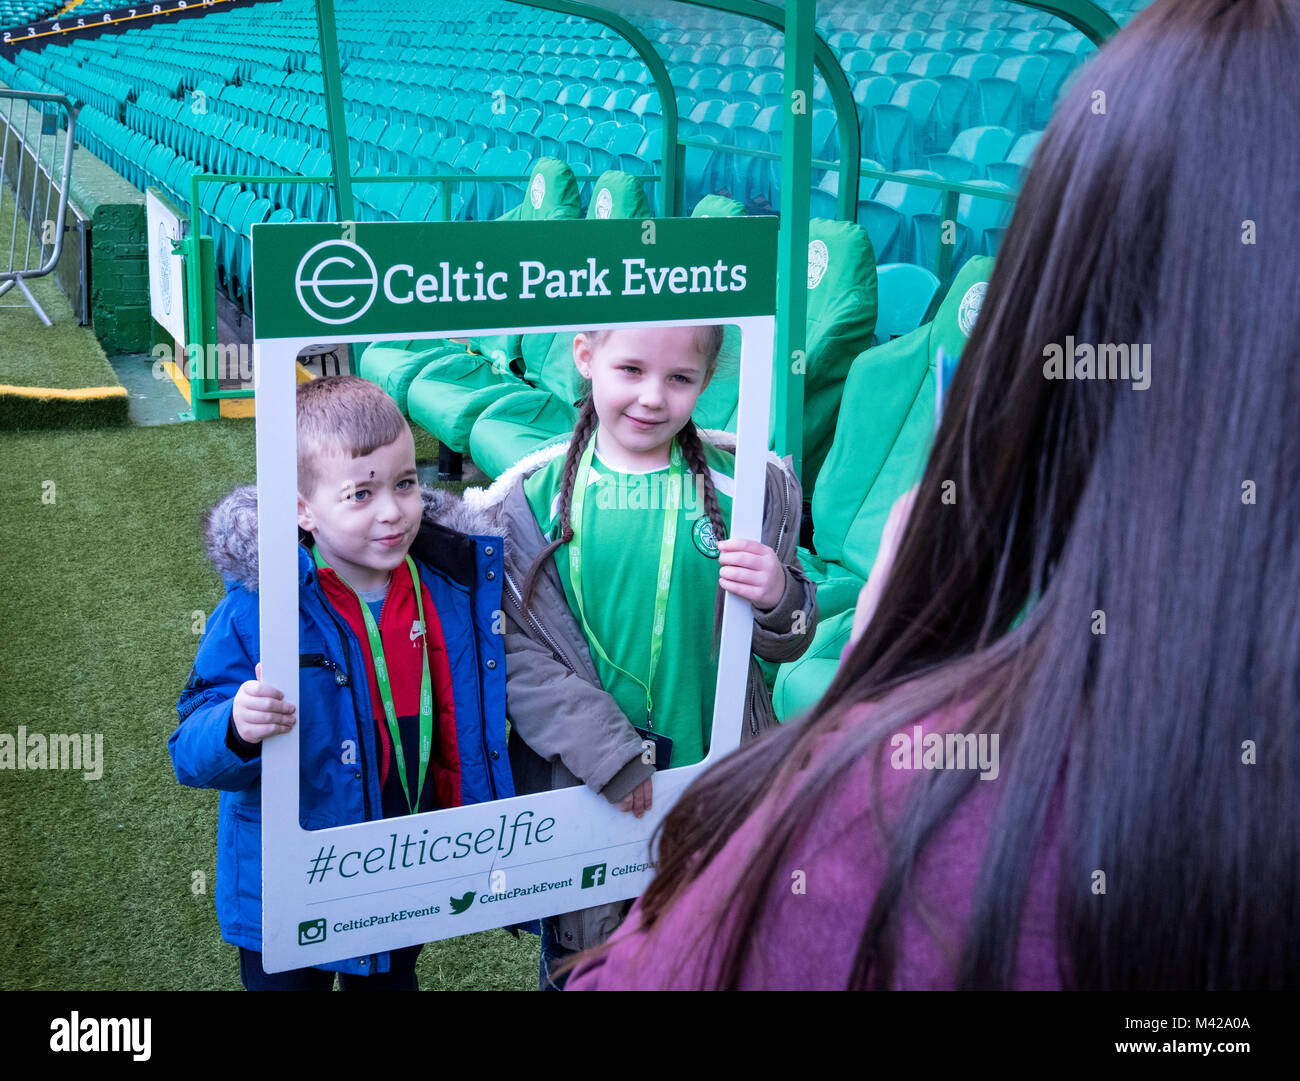 Les jeunes fans photographiée au Celtic Park home of Celtic Football Club de Parkhead , Glasgow, Ecosse, Royaume-Uni Banque D'Images